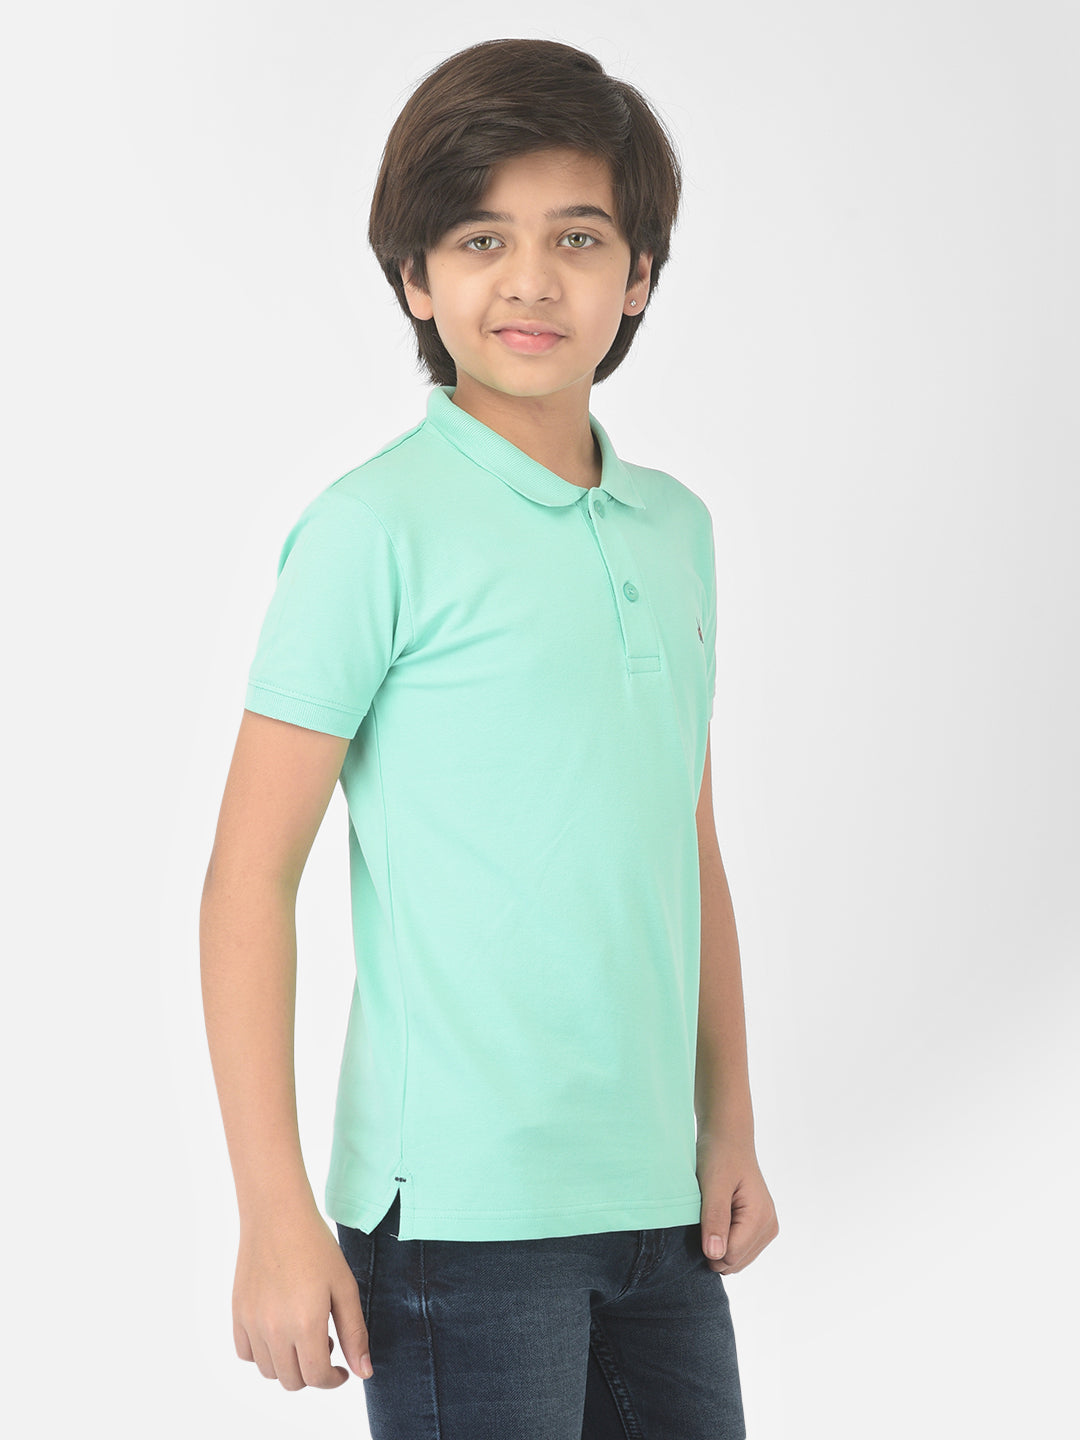 Mint Green Polo T-shirt - Boys T-Shirts